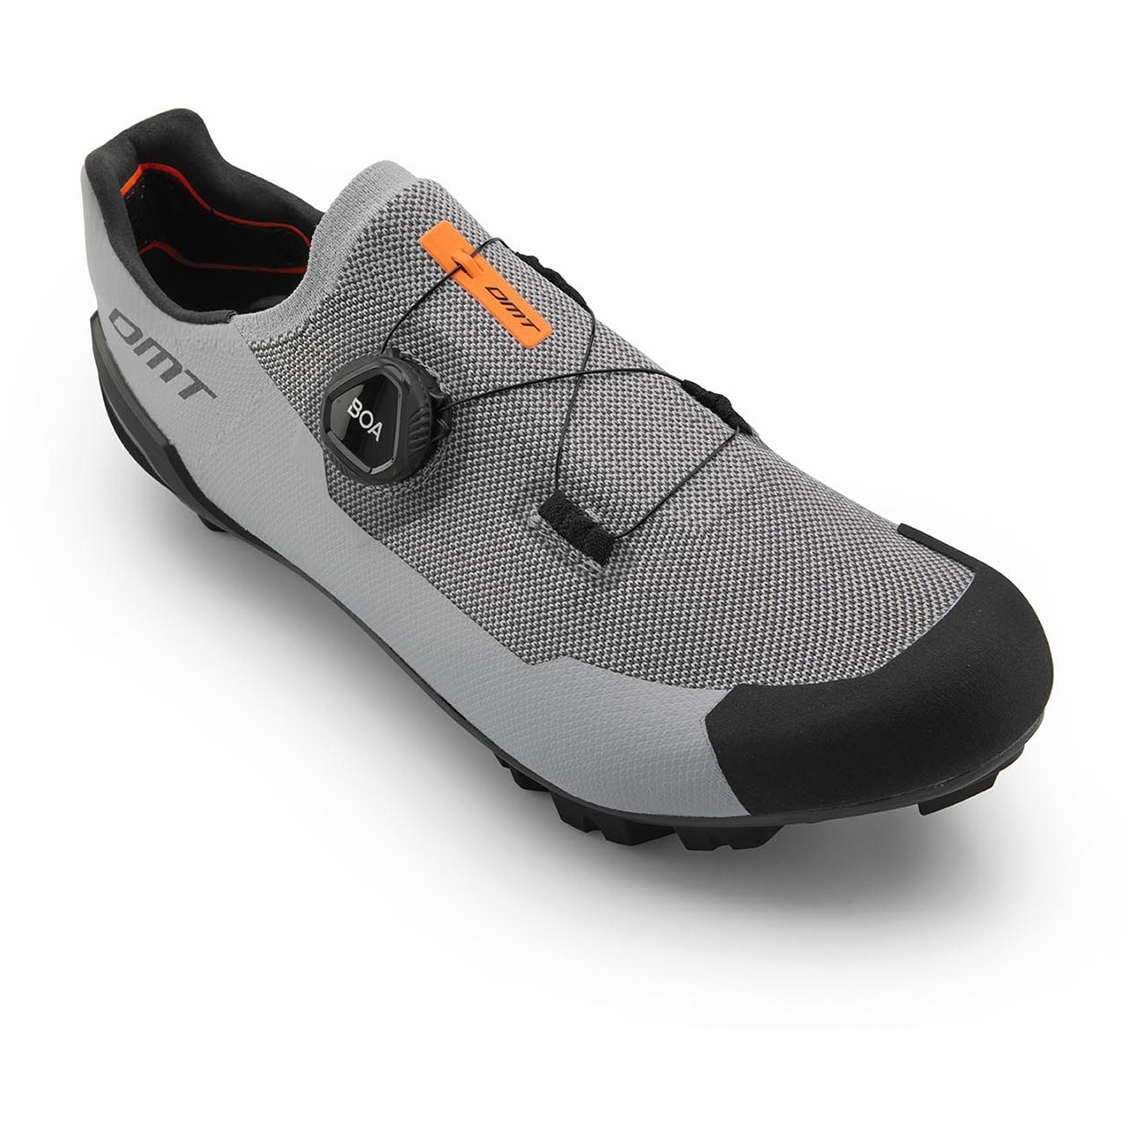 Produktbild von DMT KM30 MTB Schuhe - grau/schwarz